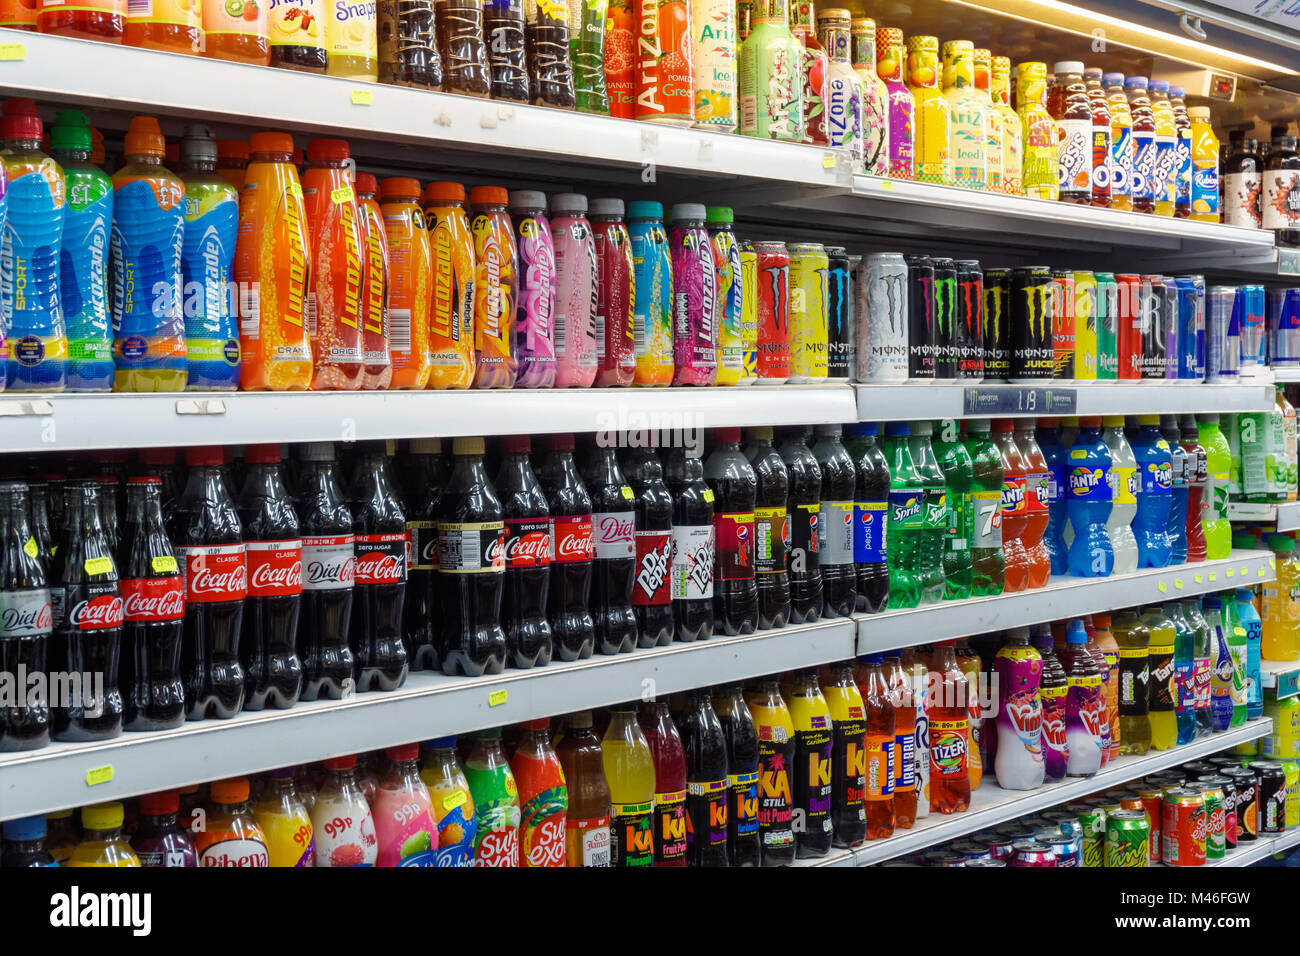 Des boissons gazeuses et sucrées sur étagère de supermarché en local, Londres Angleterre Royaume-Uni UK Banque D'Images